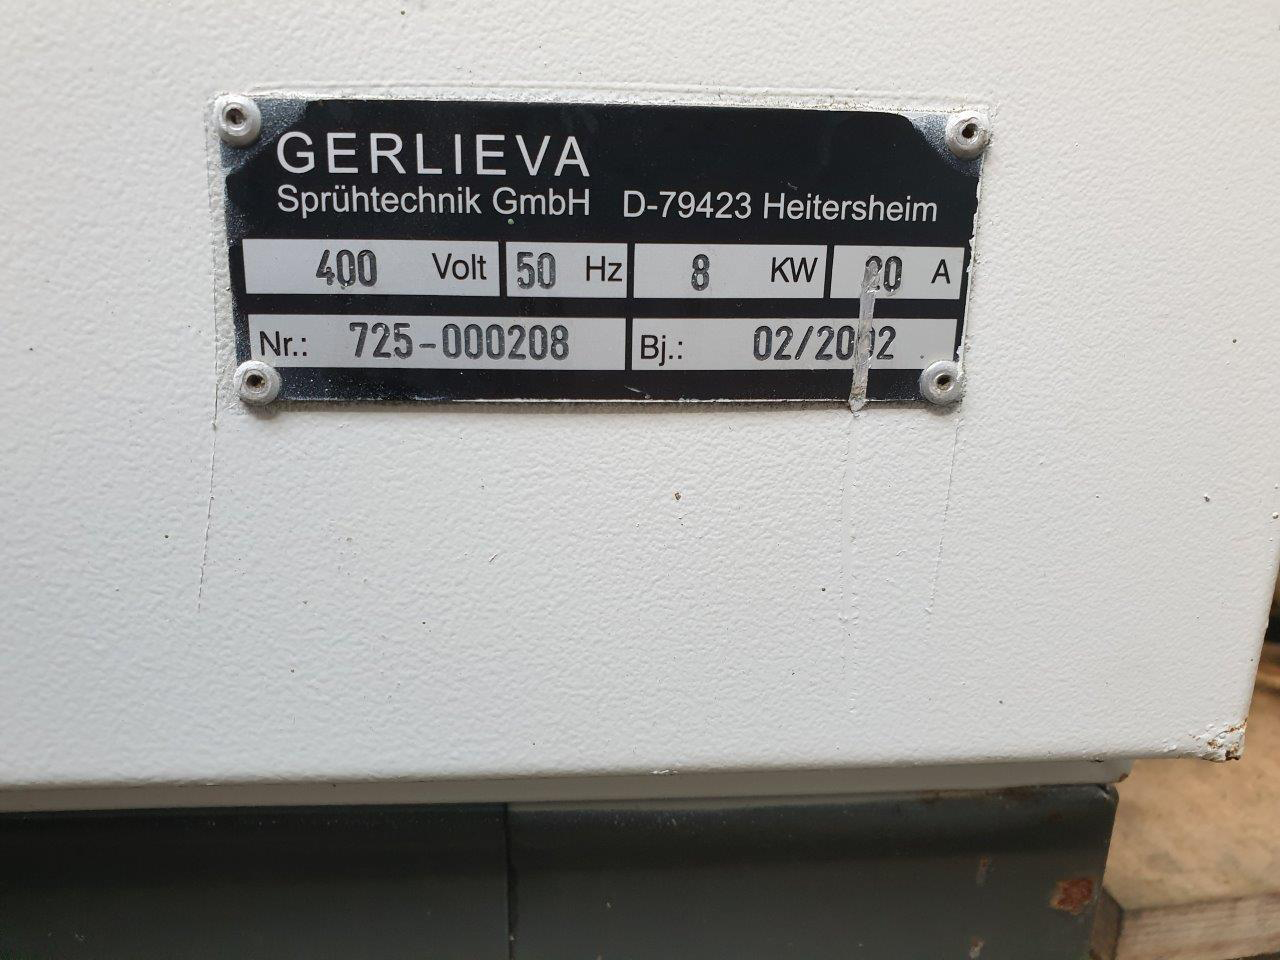 Gerlieva GS 800/1000 Z püskürtme makinesi FS1735, kullanılmış